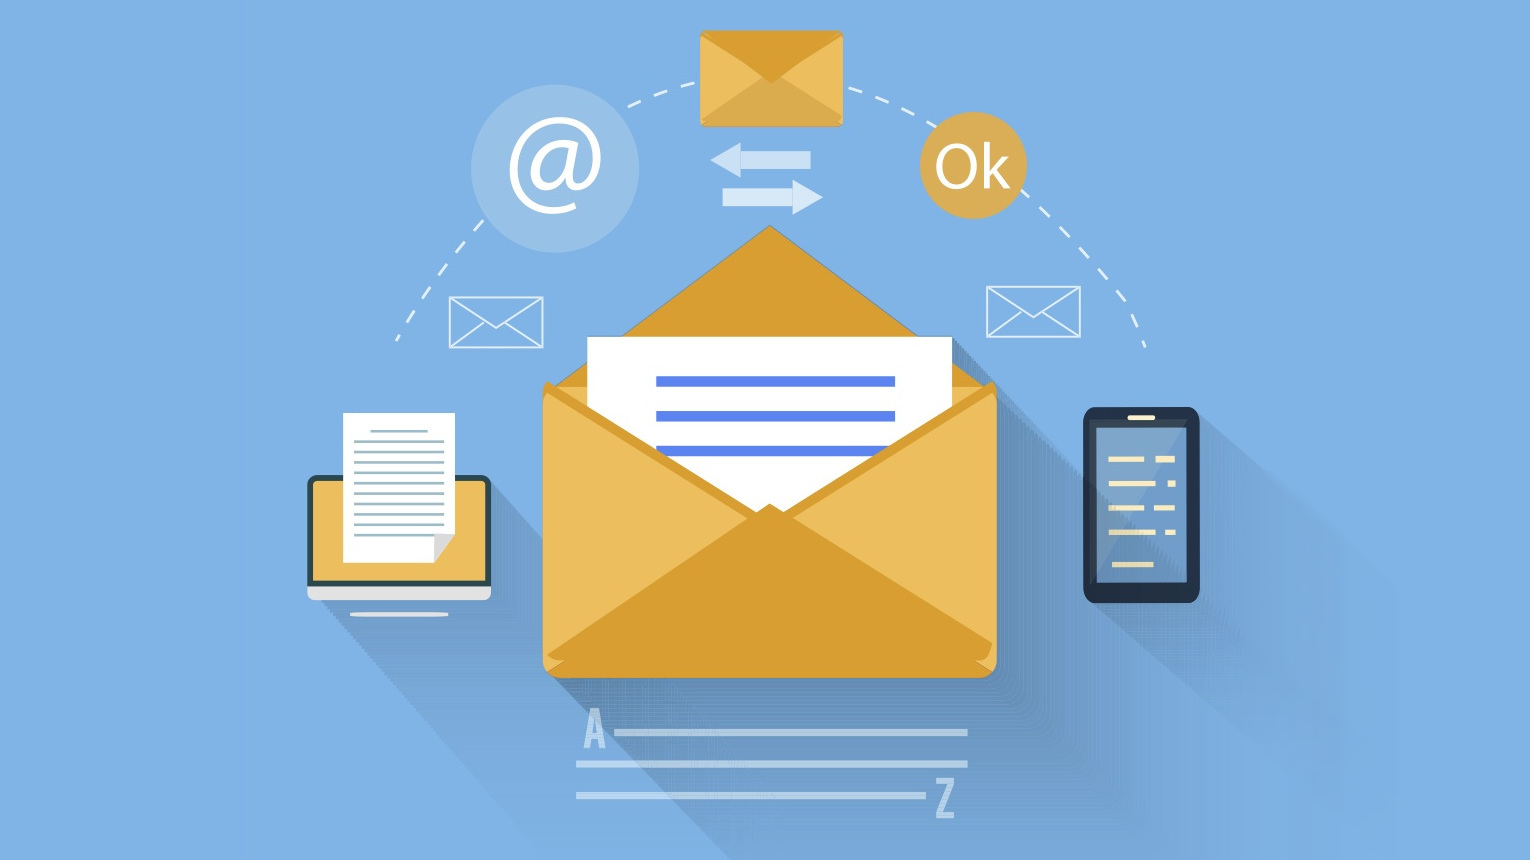 Business email giúp bạn tránh được các email spam, đồng thời giúp khách hàng dễ dàng xem nội dung thư bạn gửi